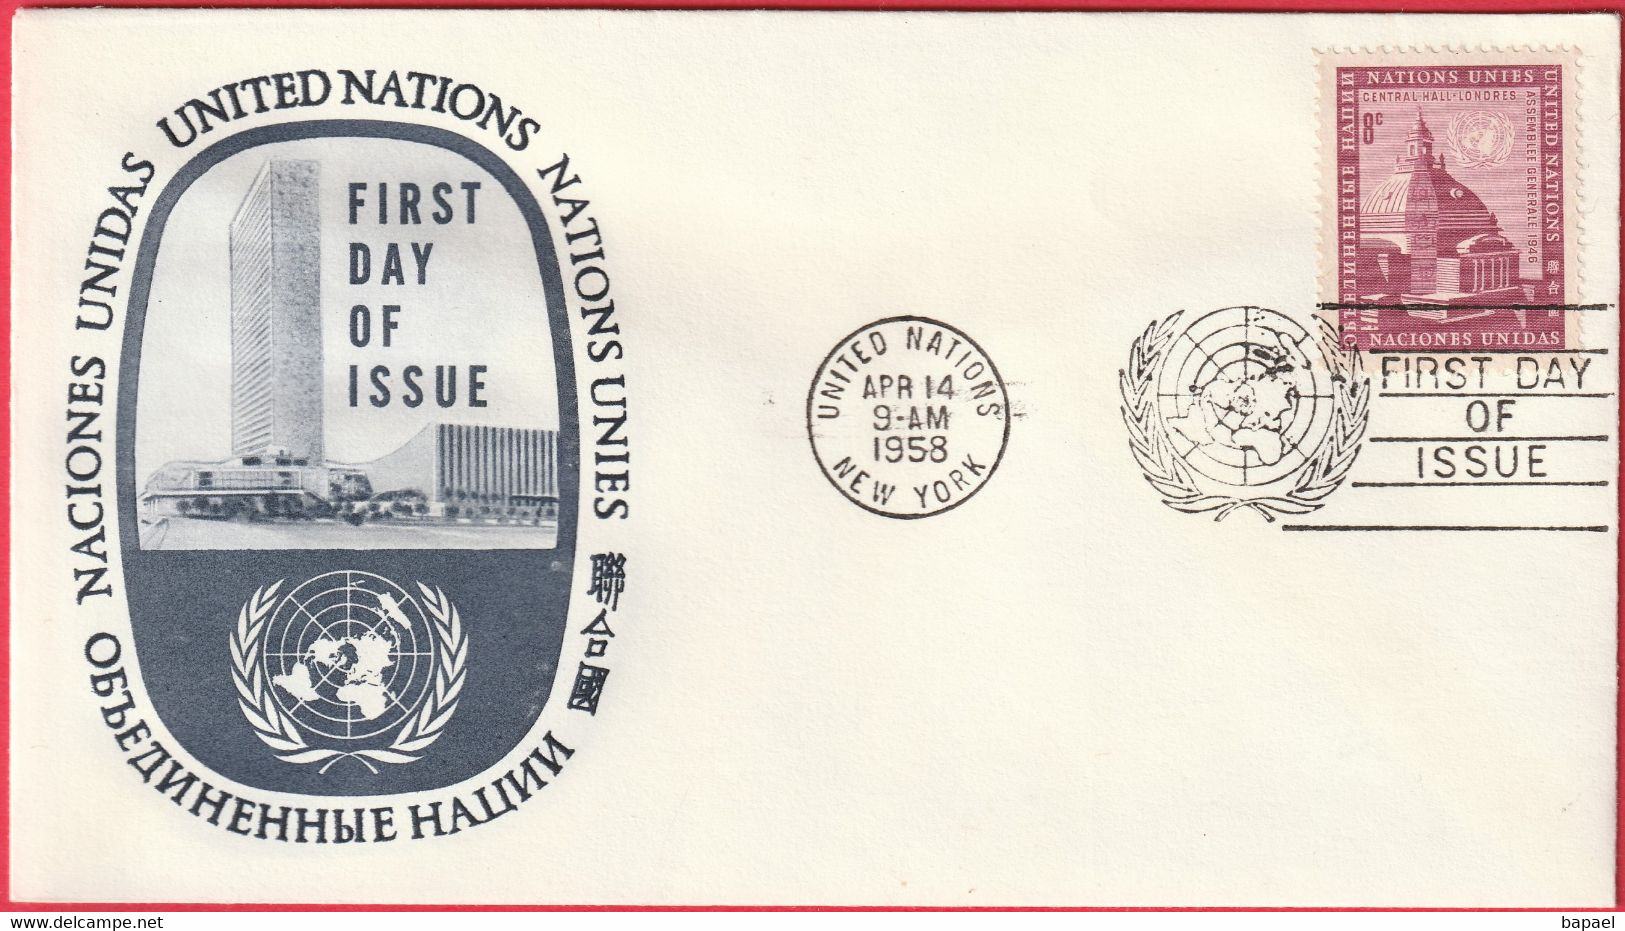 FDC - Enveloppe - Nations Unies - (New-York) (1959) - Assemblée Générale (3) - Brieven En Documenten